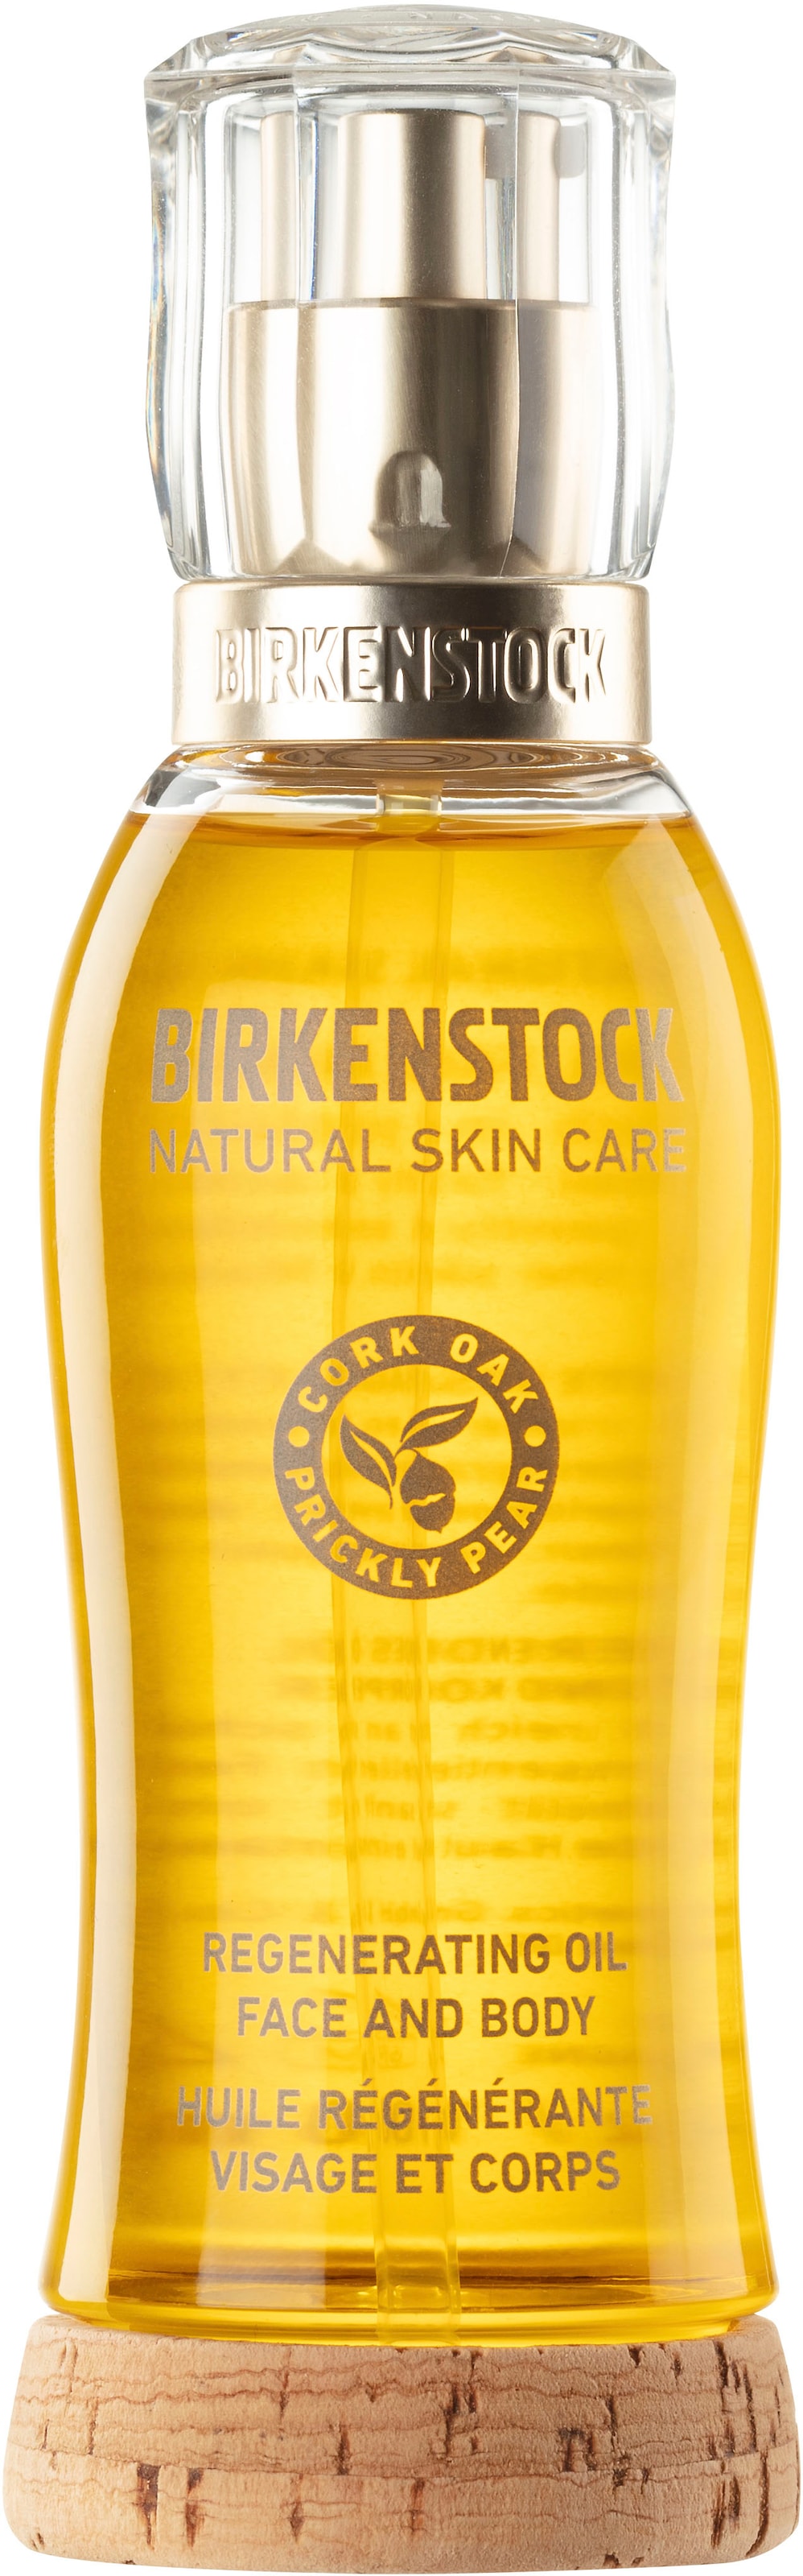 BIRKENSTOCK NATURAL SKIN CARE Körperöl »Regenerating Oil Face & Body«